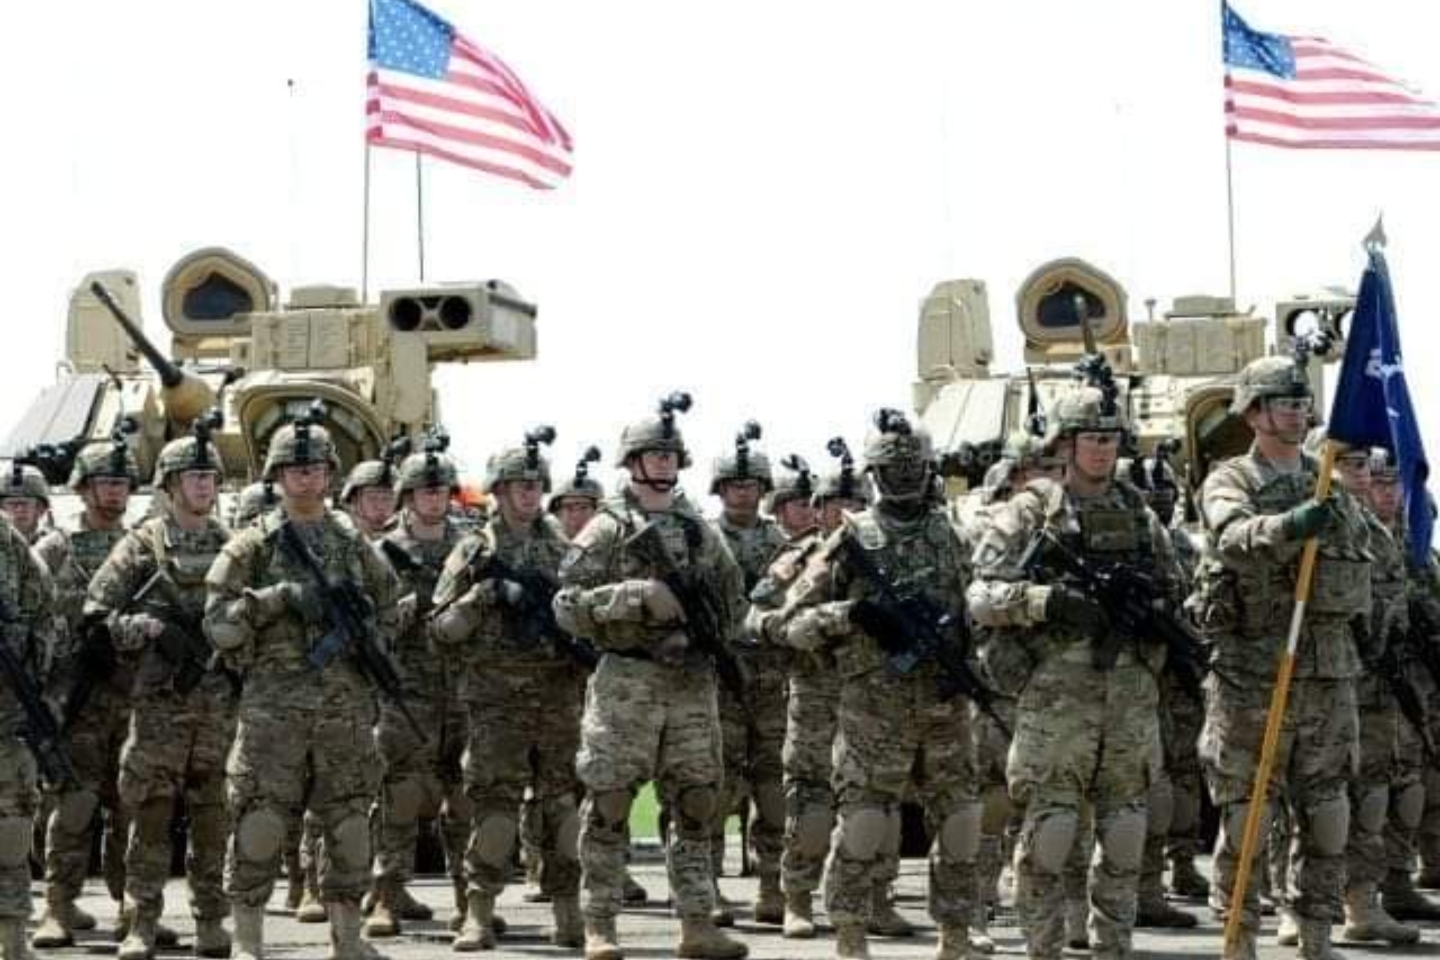 300 ushtarët amerikanë nisen për Kosovë: Pavarësia dhe sovraniteti do të mbeten të forta